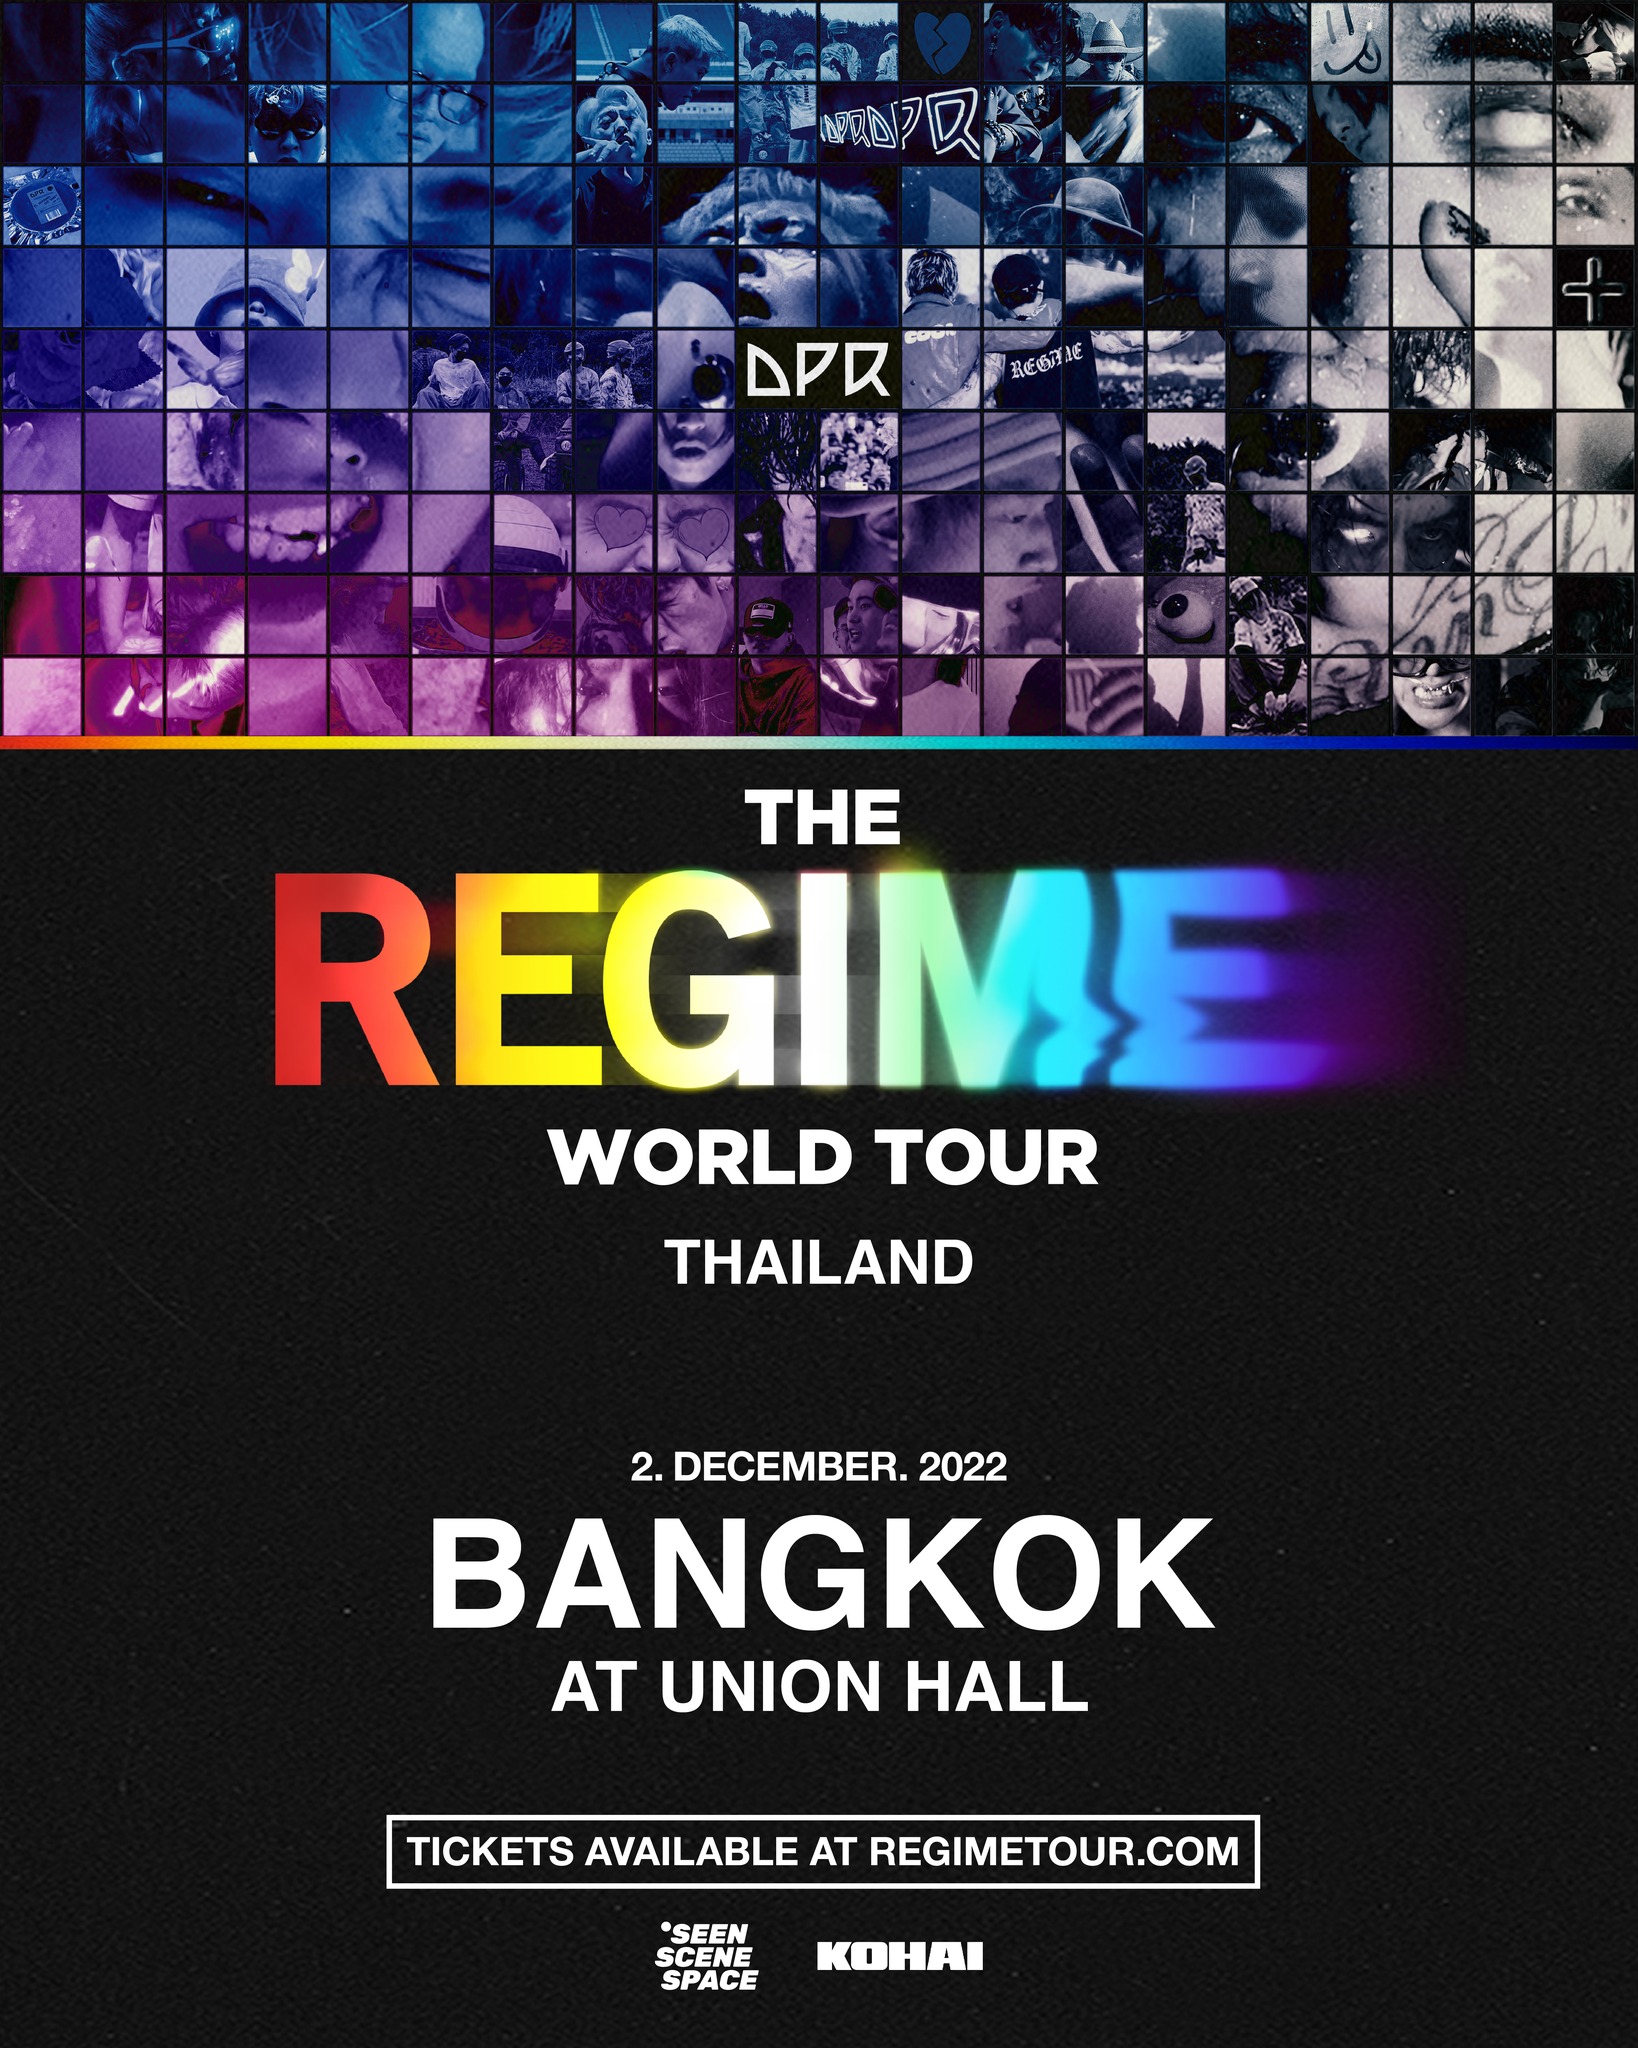 DPR Regime Tour in Bangkok